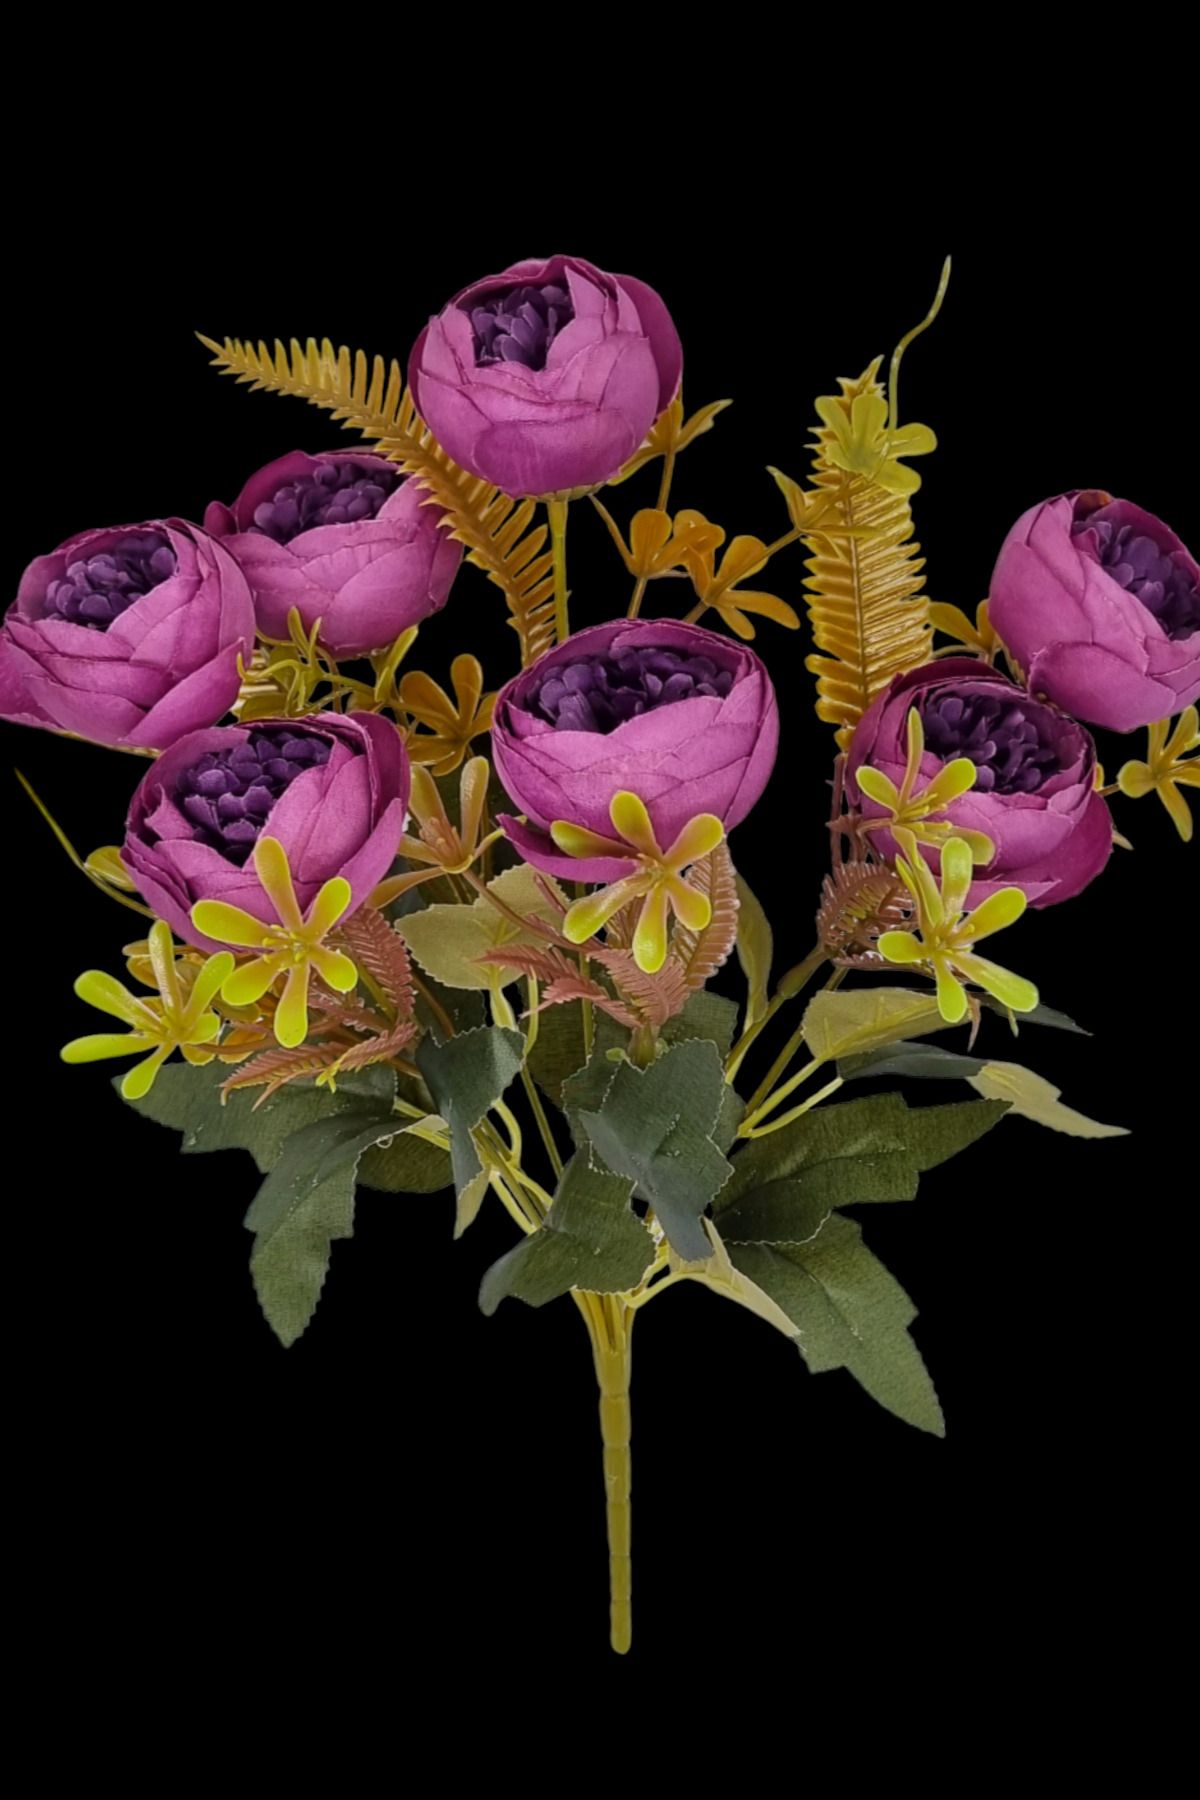 MD Aspiz Flowers 1 Adet Yapay 7lu Lüx Gül Şakayık Demeti Kasımpatı Krizantem Karanfil Erengül Buketi Ev Bitki Kuru